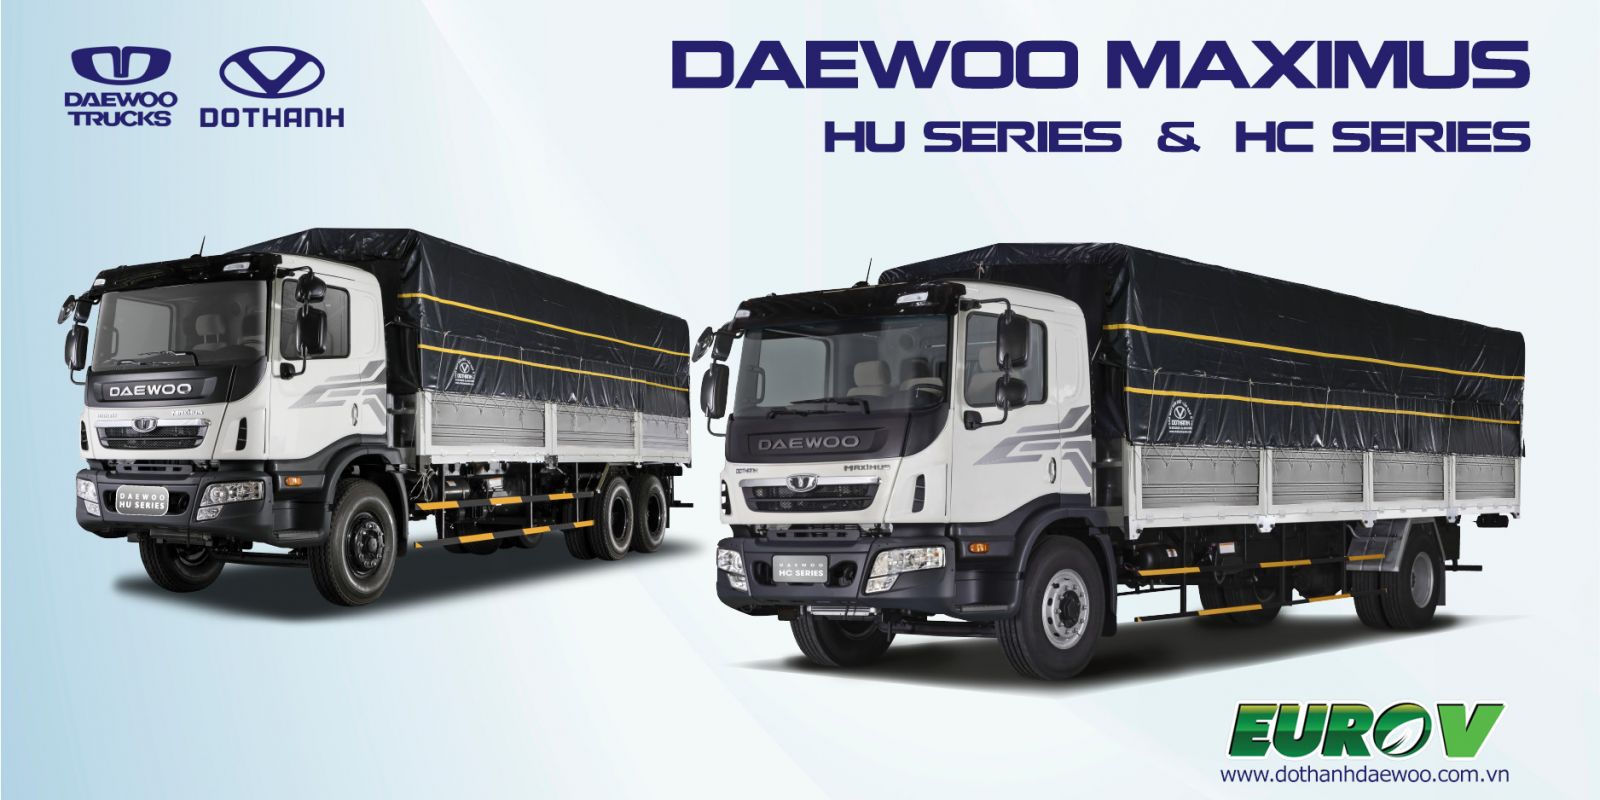 Dòng xe tải Daewoo Maximus chất lượng đến từ Hàn Quốc